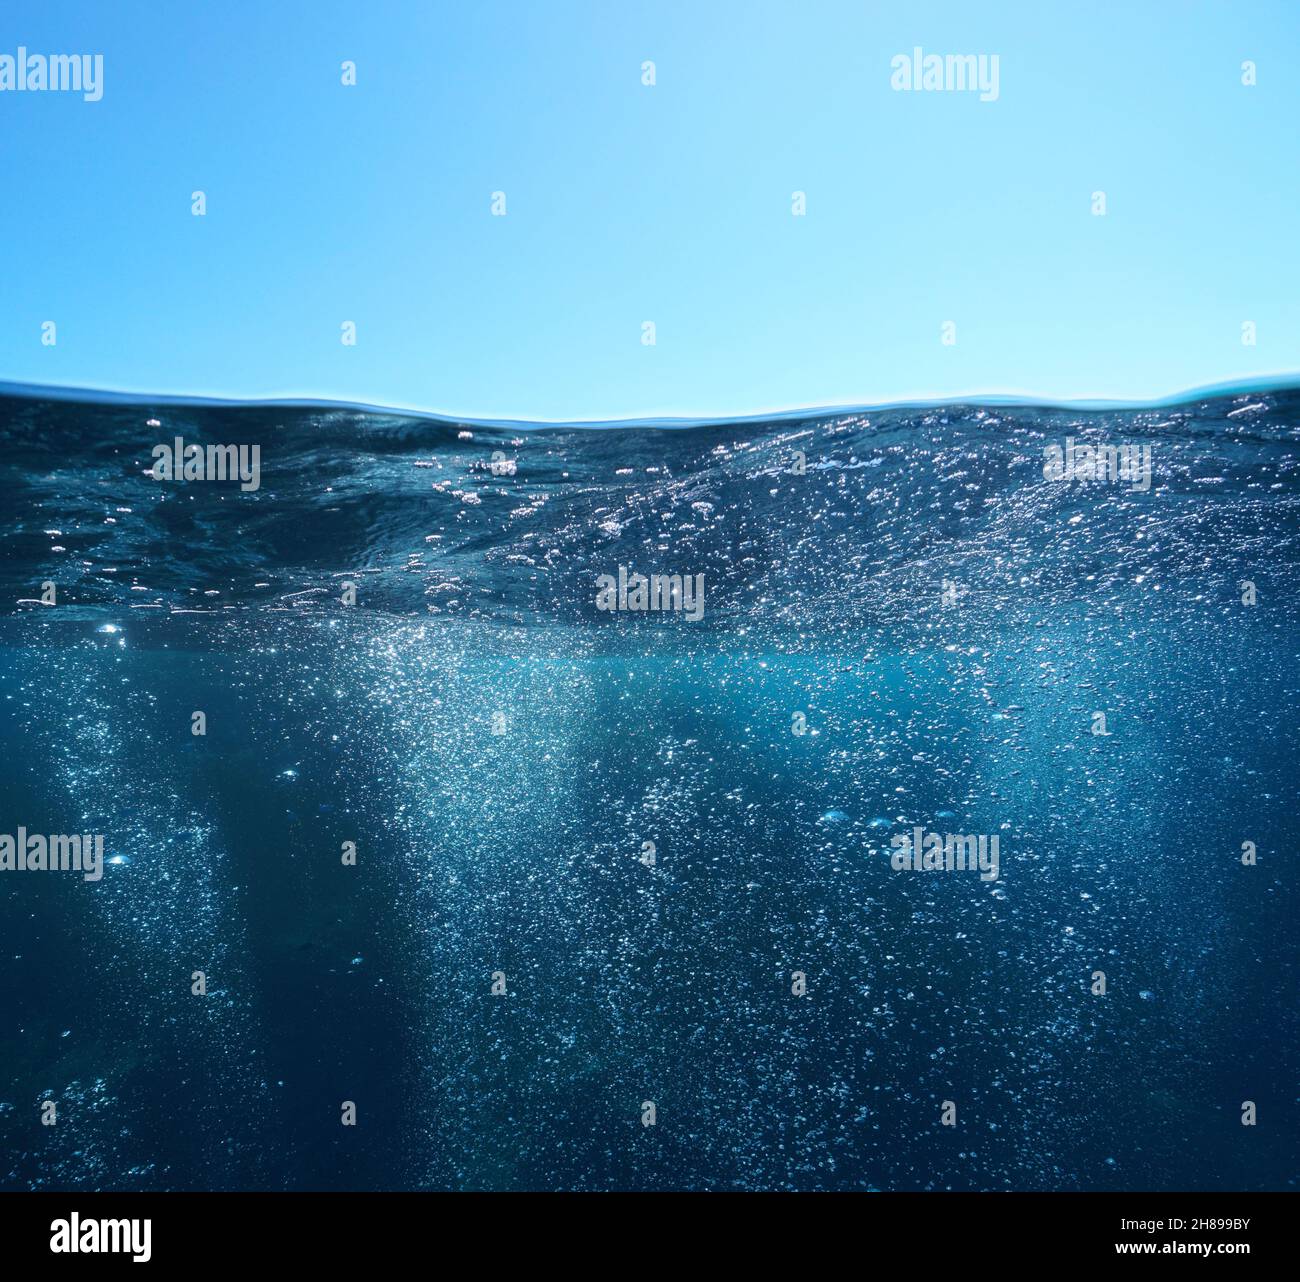 Bulles d'air sous la mer et le ciel bleu, vue partagée sur et sous la surface de l'eau, mer Méditerranée Banque D'Images